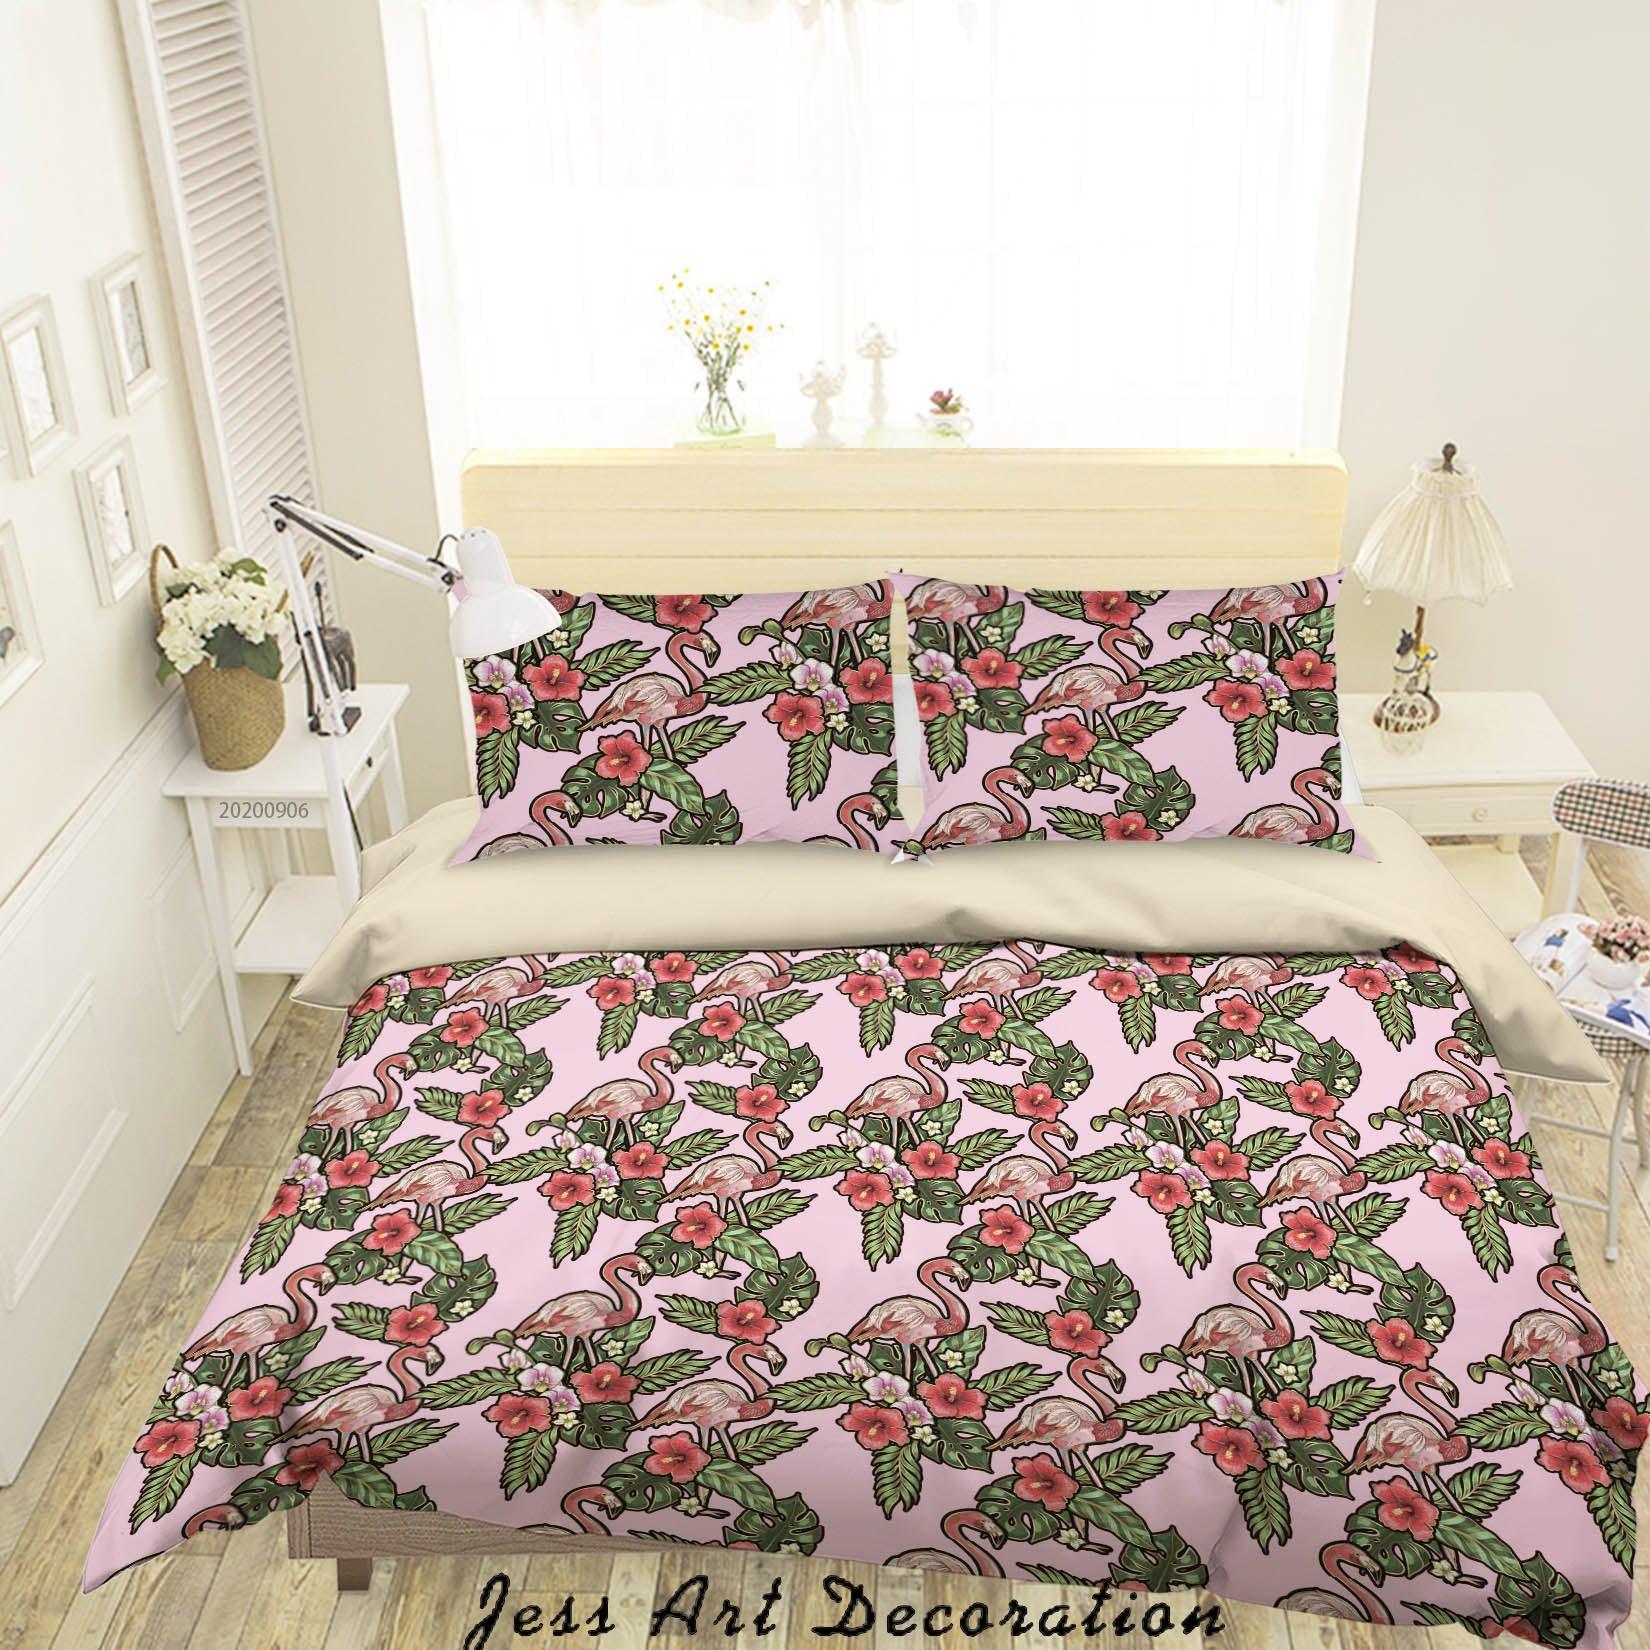 3D Vintage Leaves Flamingo Floral Pattern Quilt Cover Set Bedding Set Duvet Cover Pillowcases WJ 3654- Jess Art Decoration